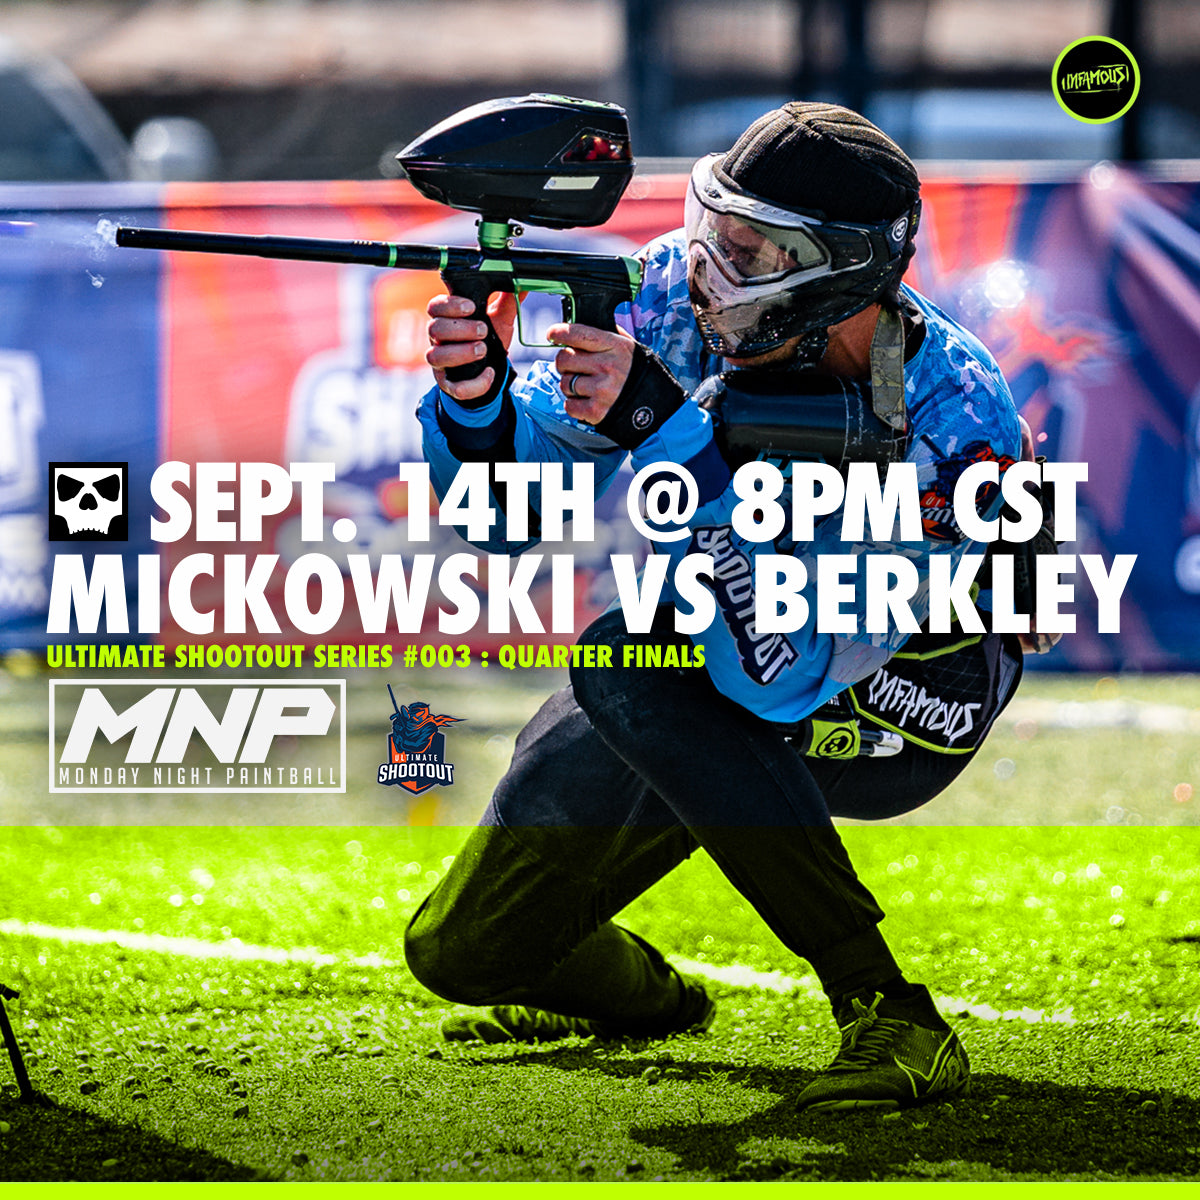 Cody Mickowski vs Berkley on Monday Night Paintball